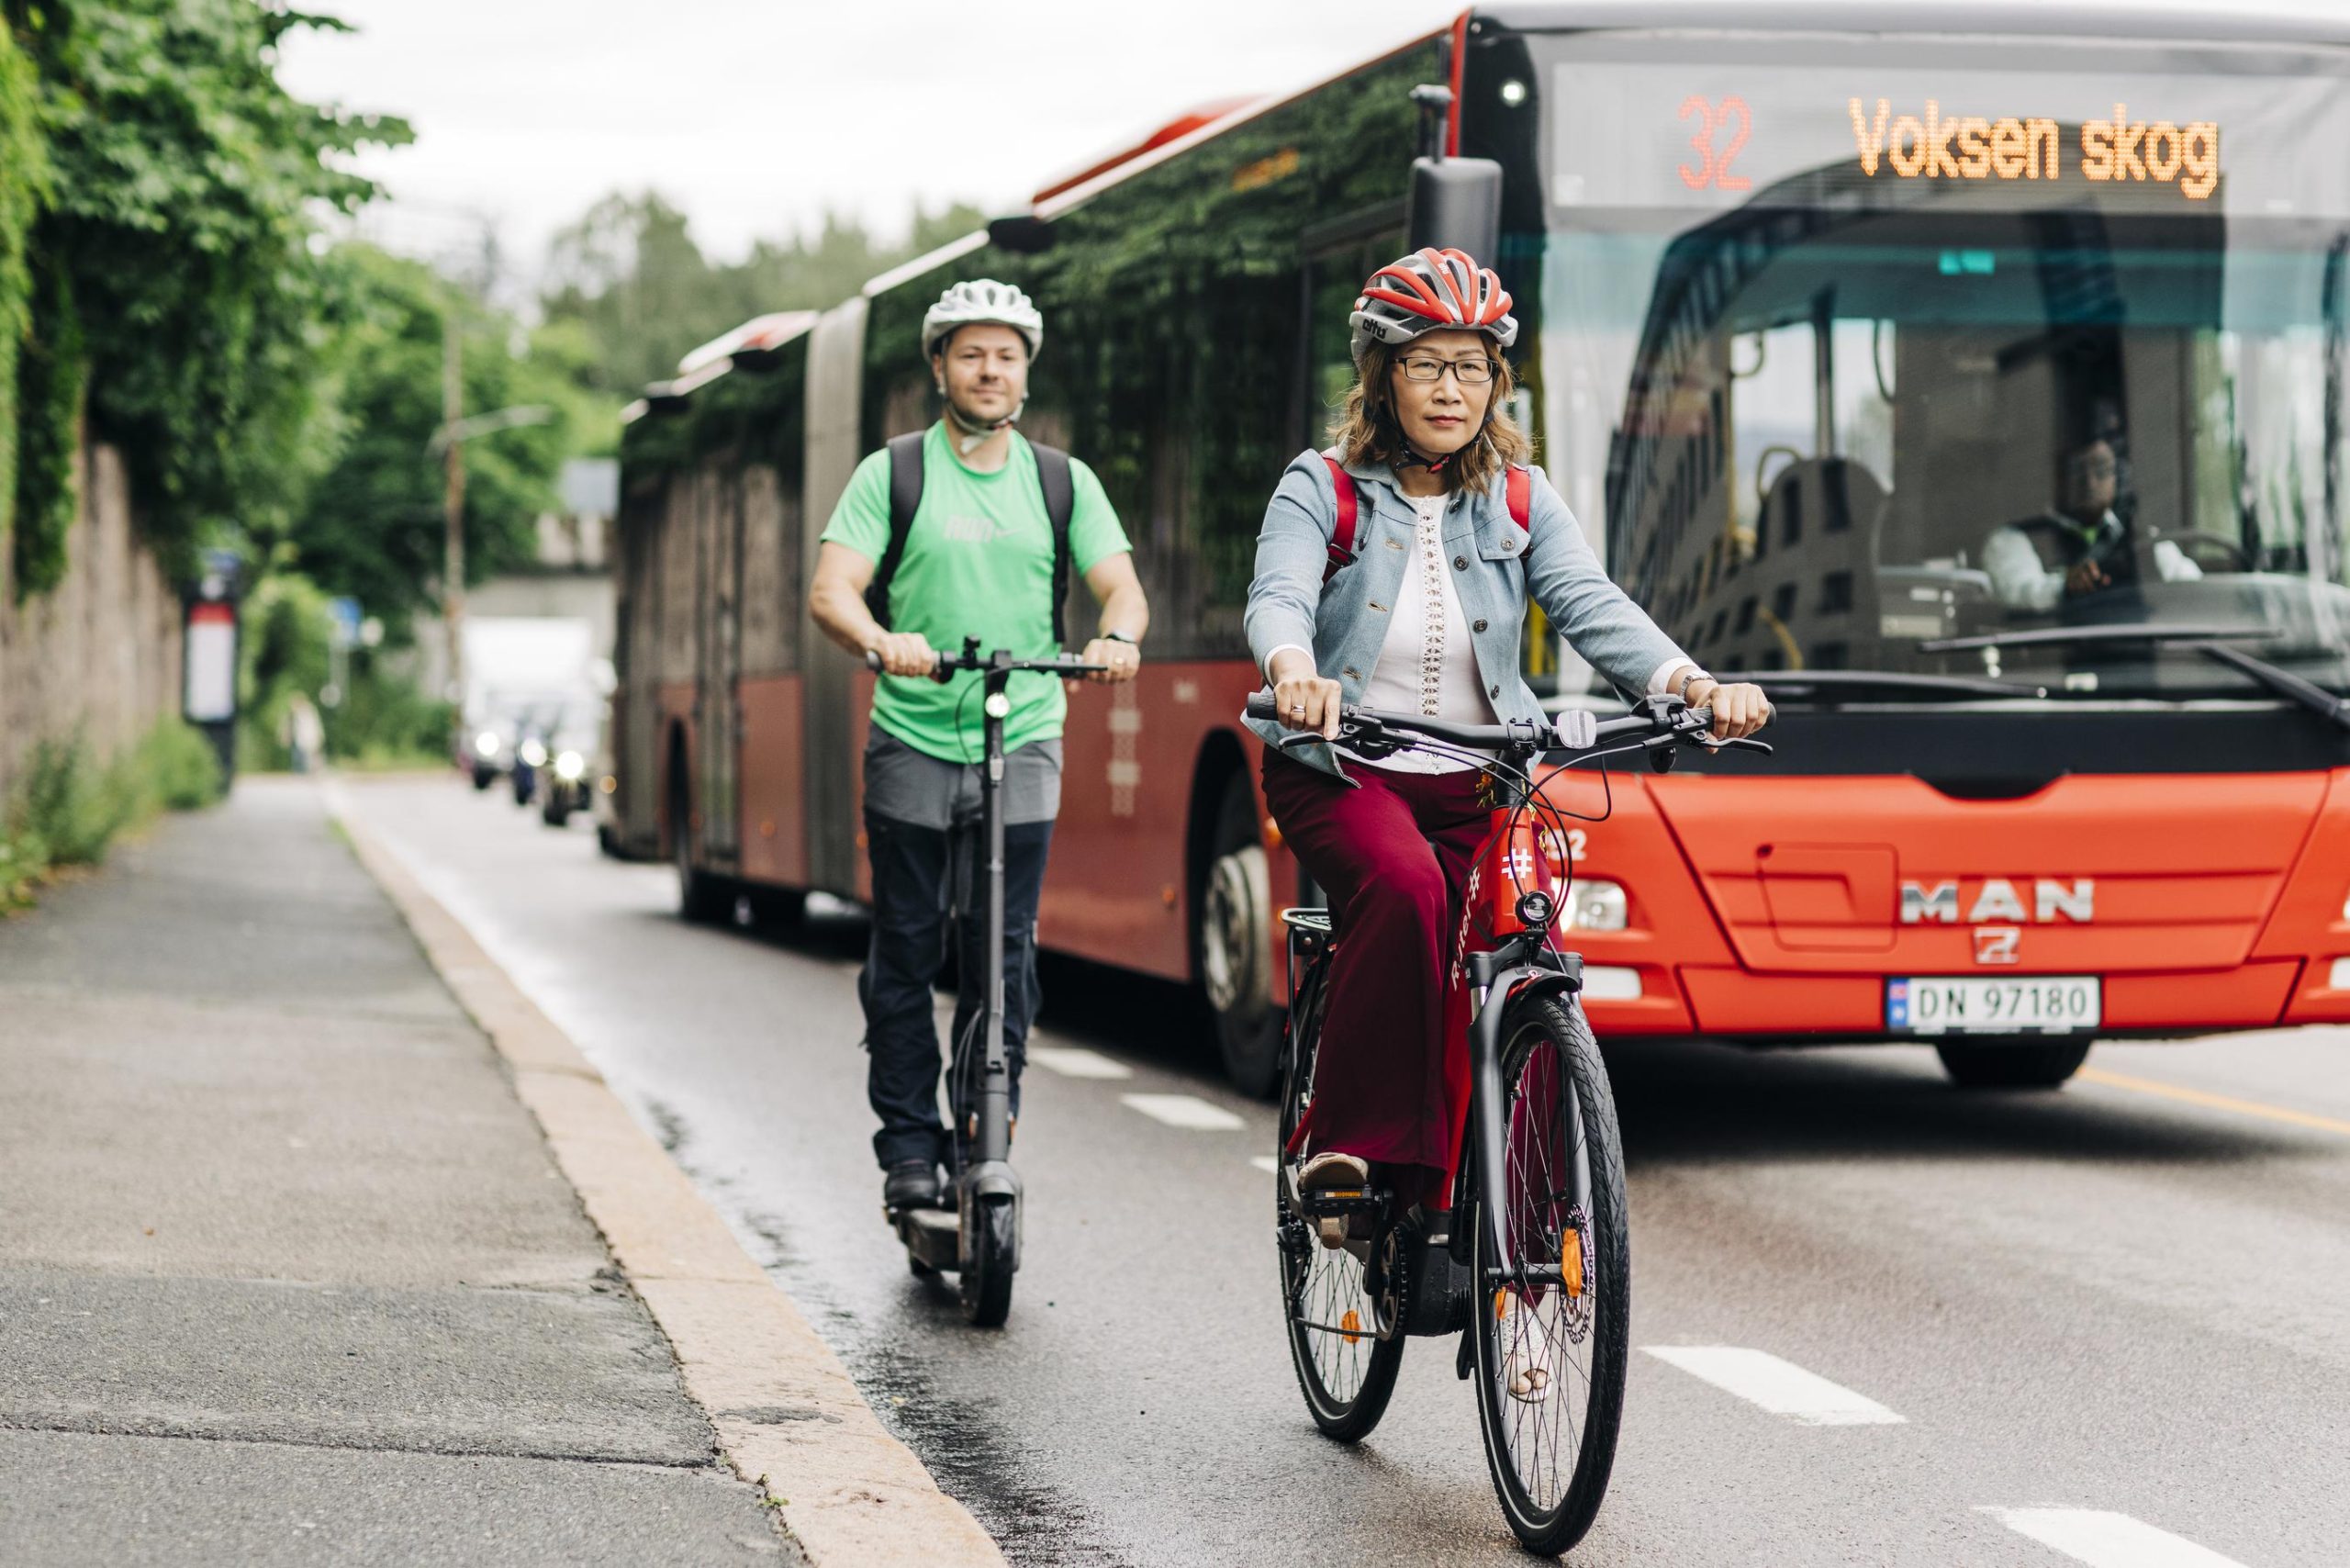 En kvinne på sykkel og en mann på sparkesykkel, i sykkelfelt, kjører forbi en Ruter bybuss.